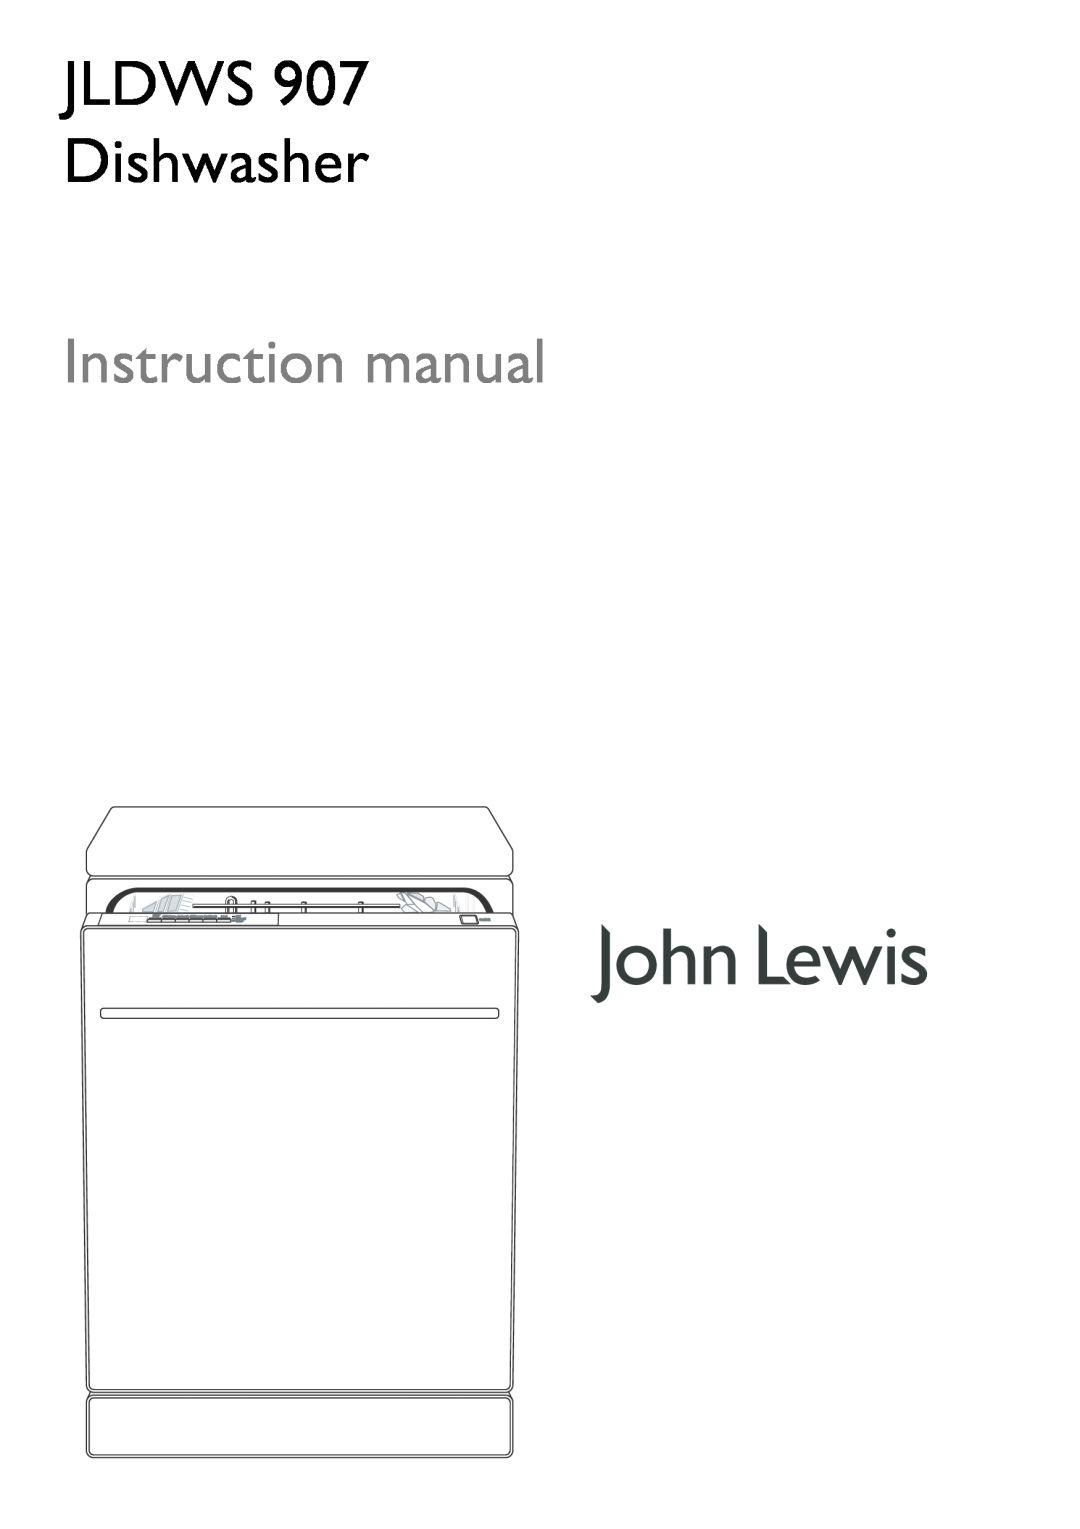 John Lewis JLDWS 907 instruction manual JLDWS Dishwasher 